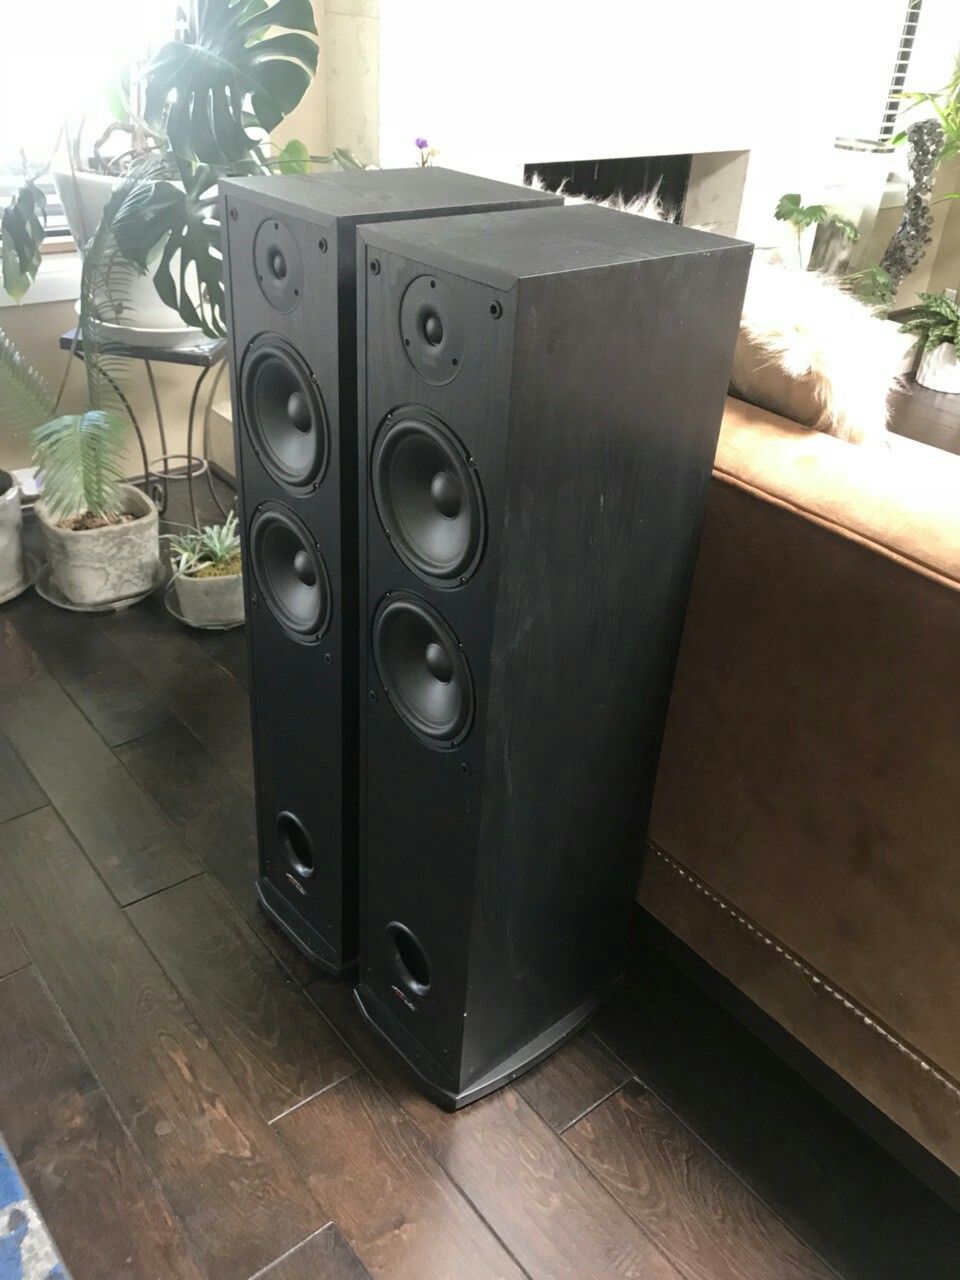 Polk R50 tower speakers